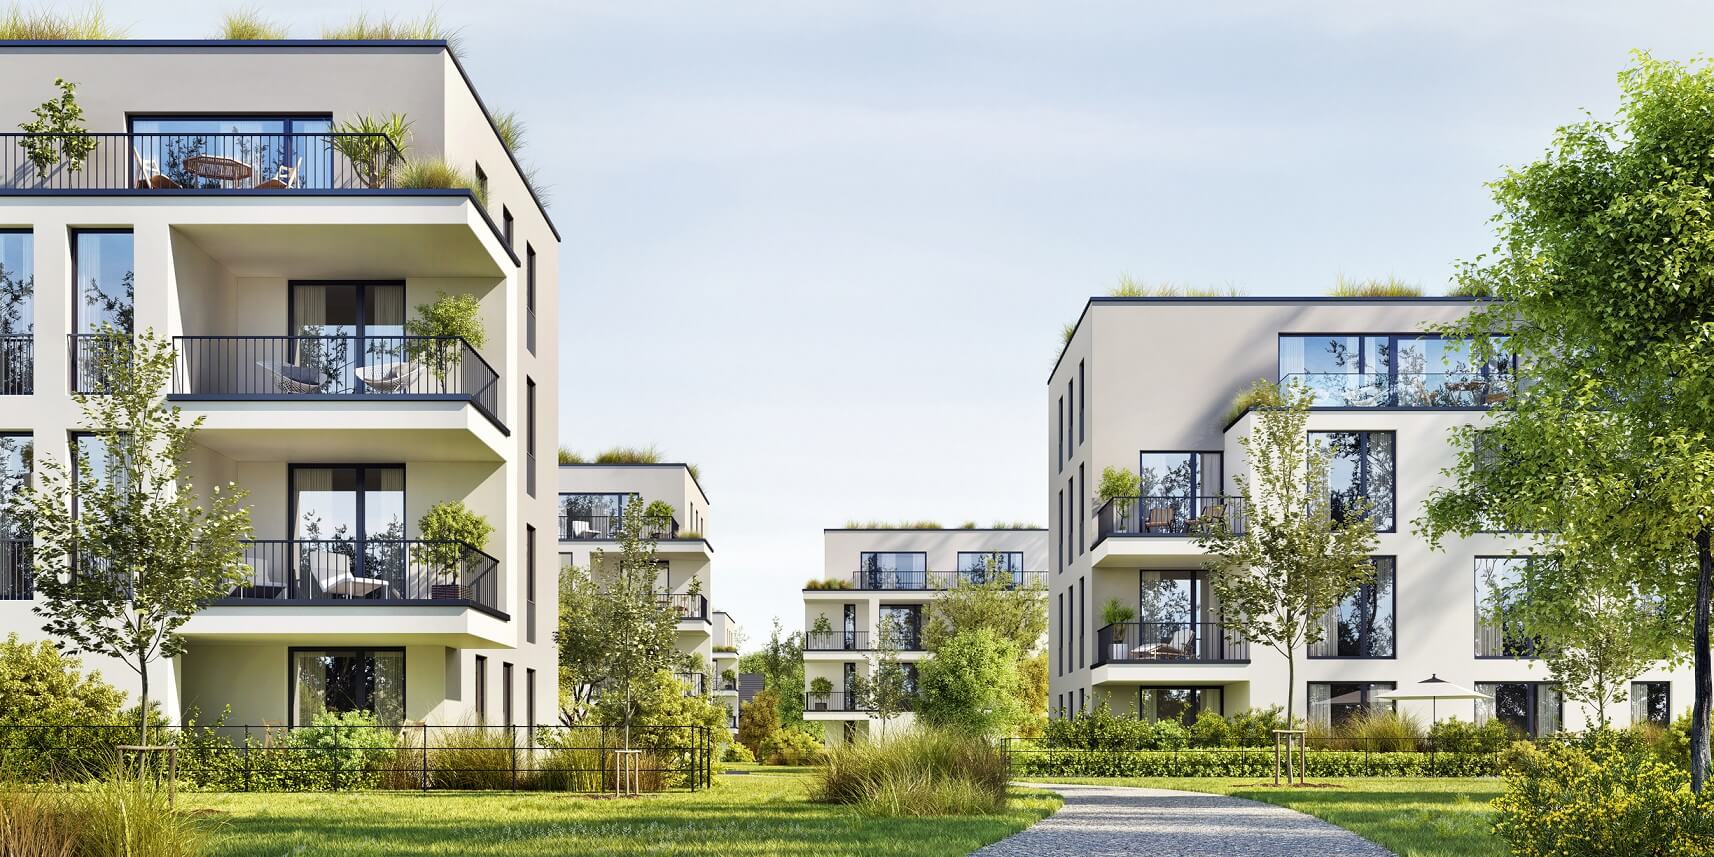 Wohnanlage mit modernen Mehrfamilienhäusern im Grünen